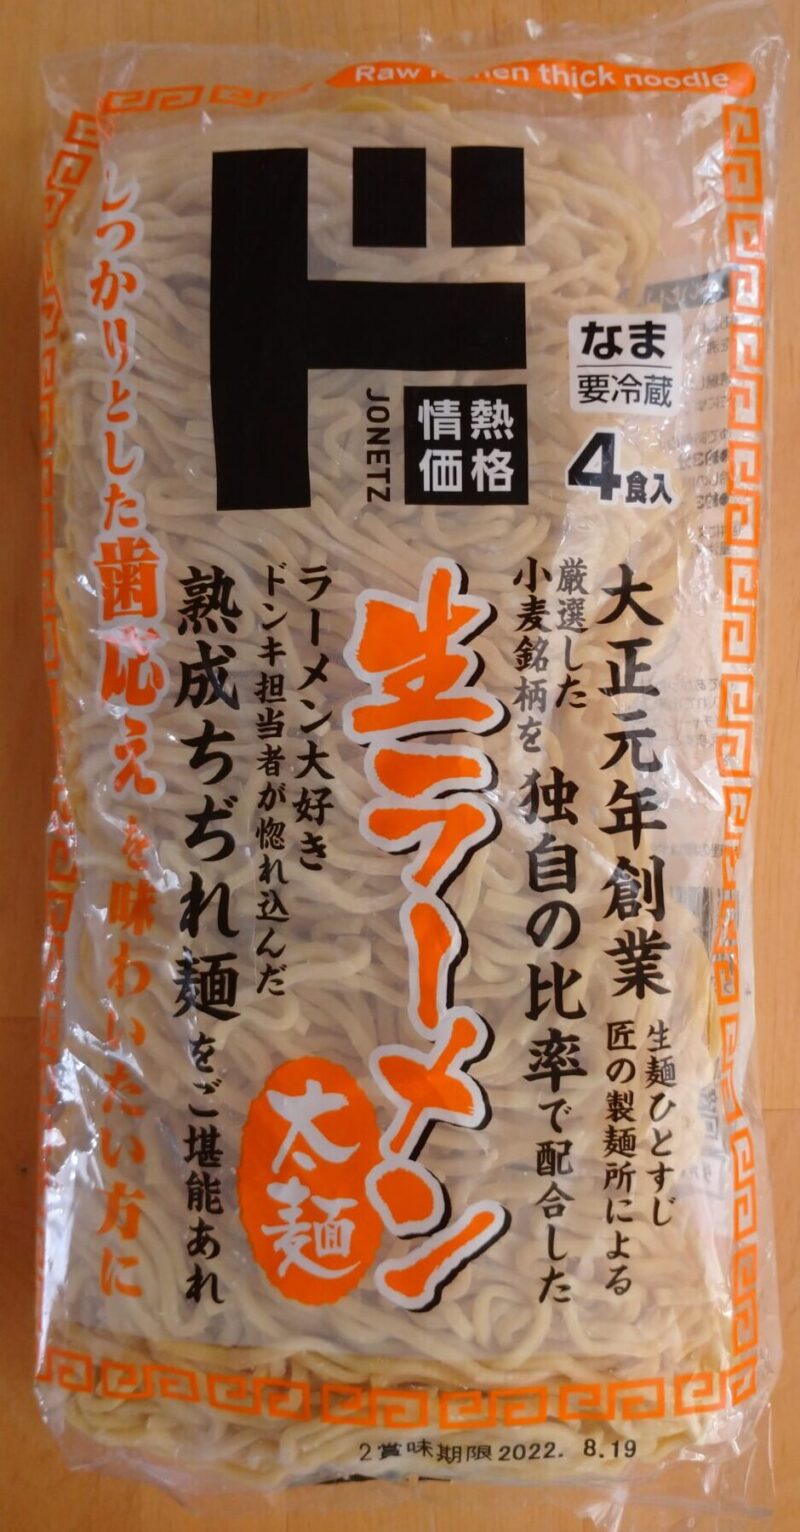 ドンキ生ラーメン太麺のパッケージ